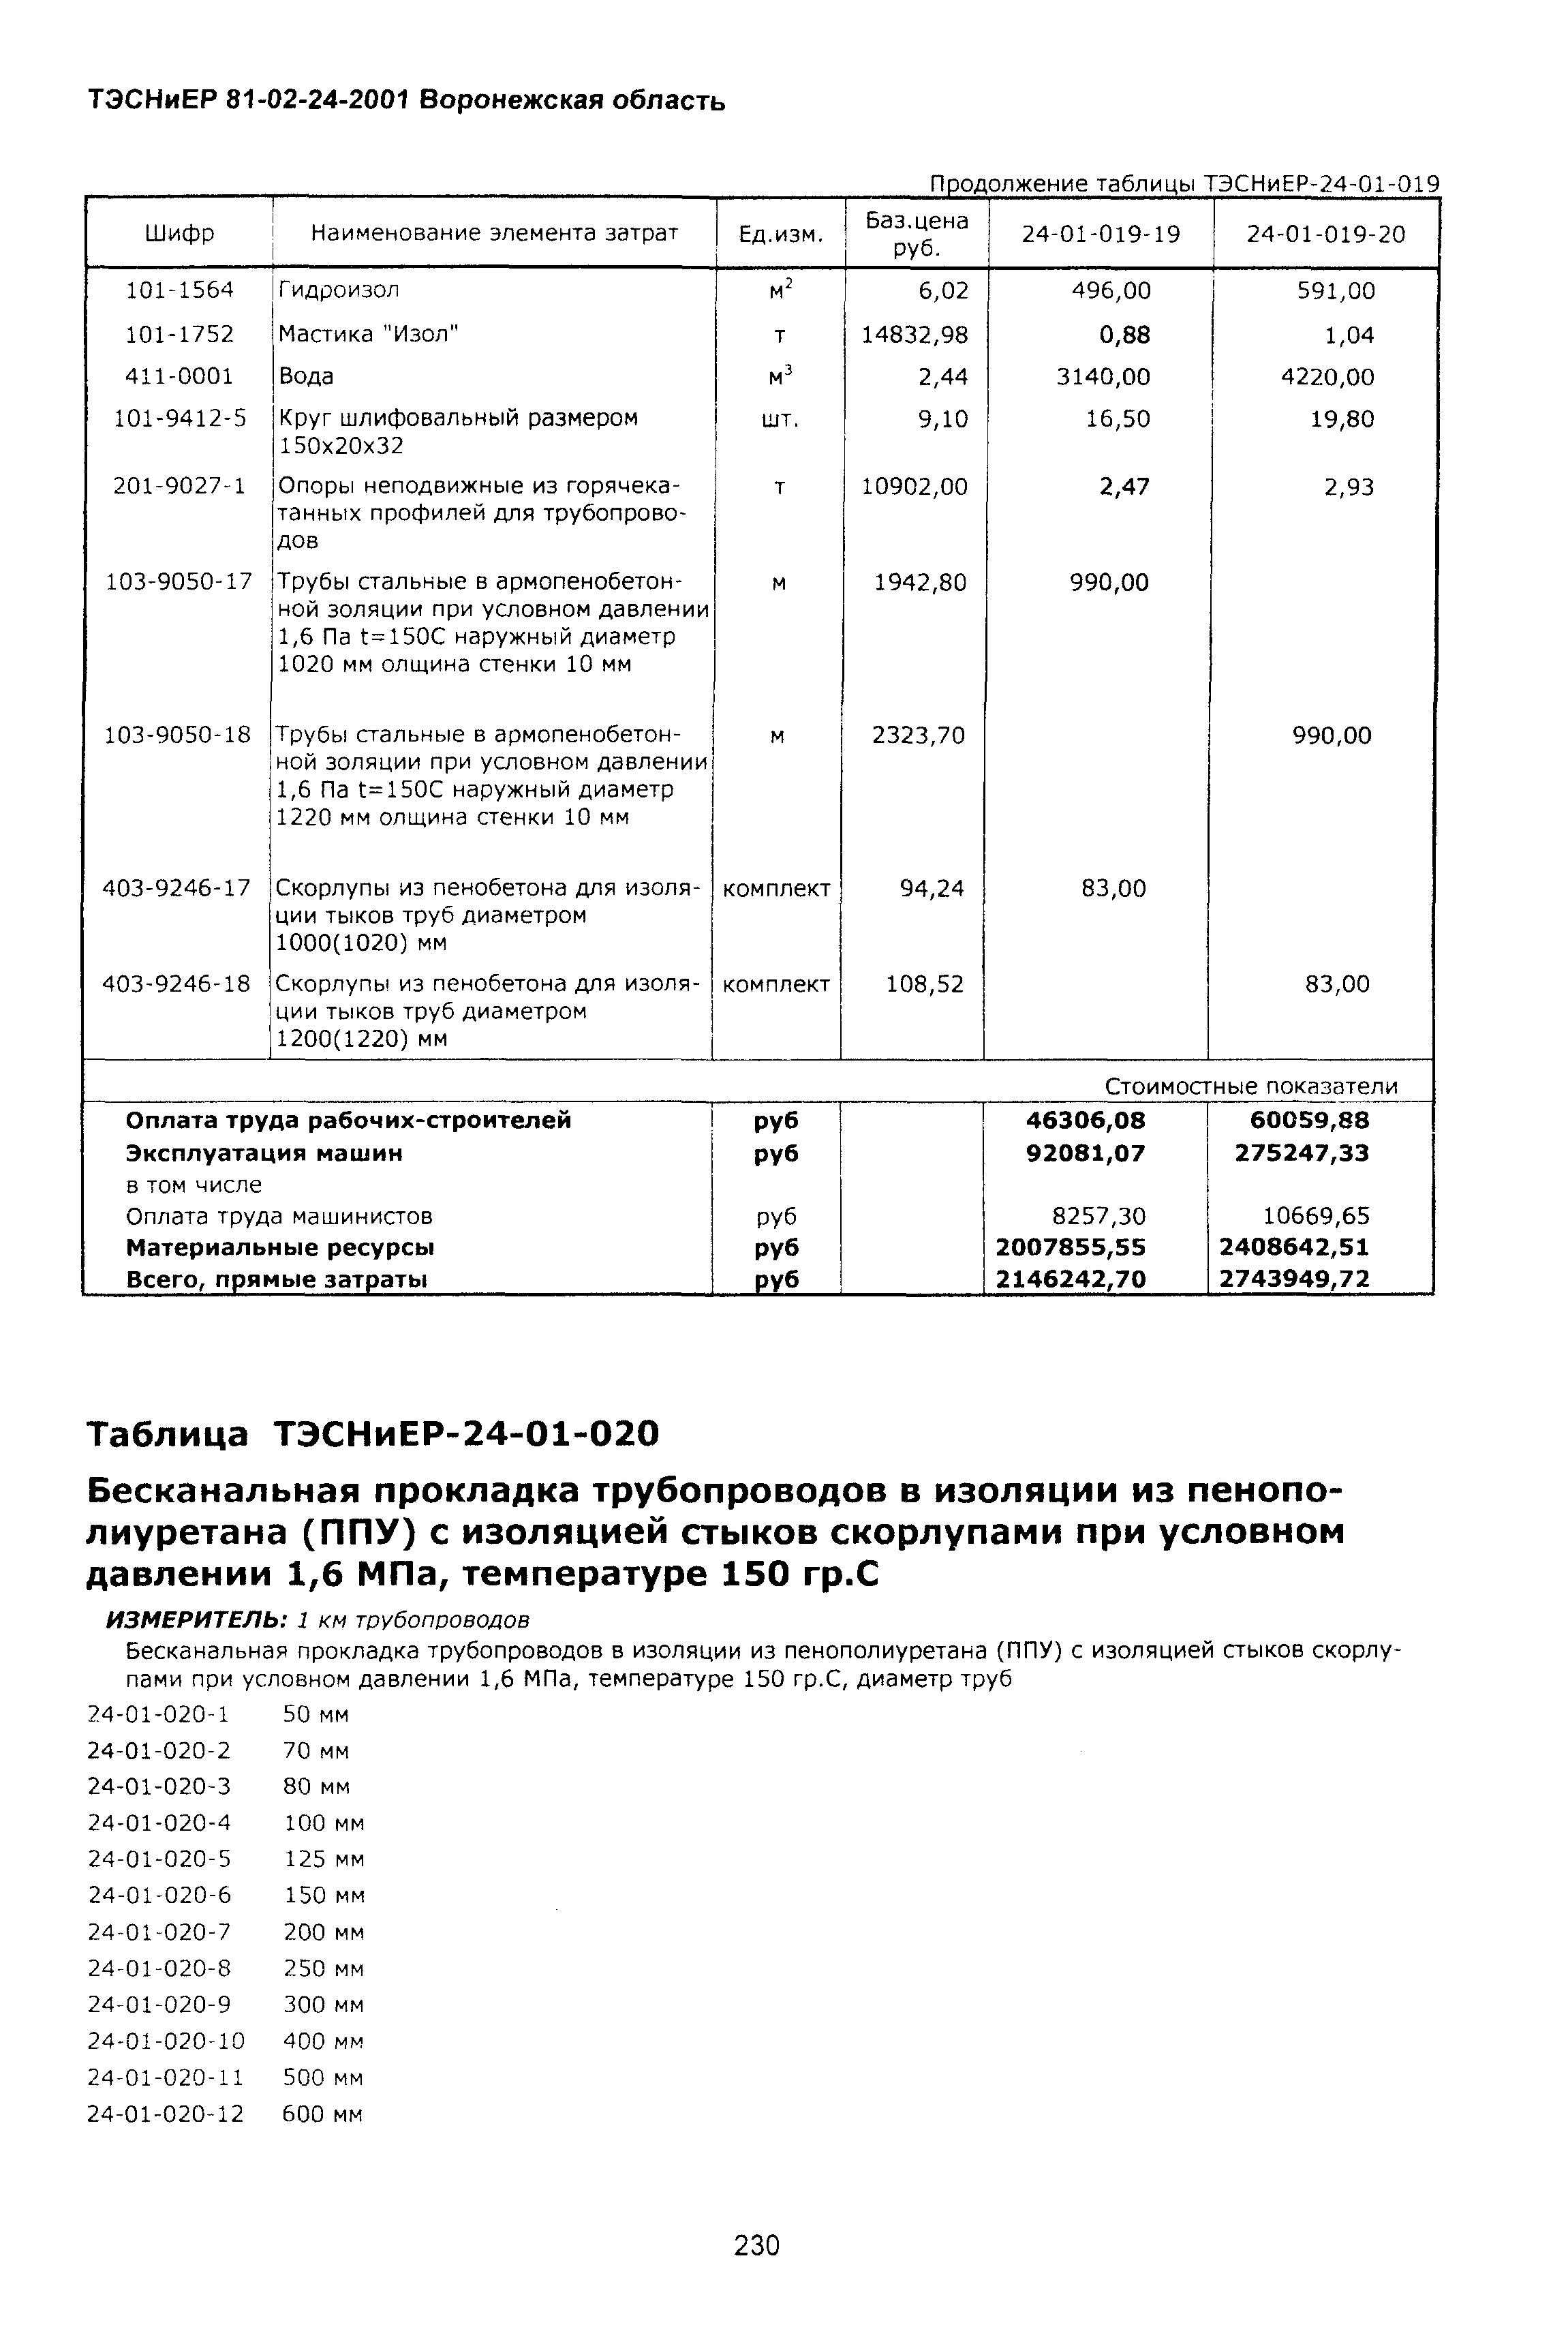 ТЭСНиЕР Воронежская область 81-02-24-2001